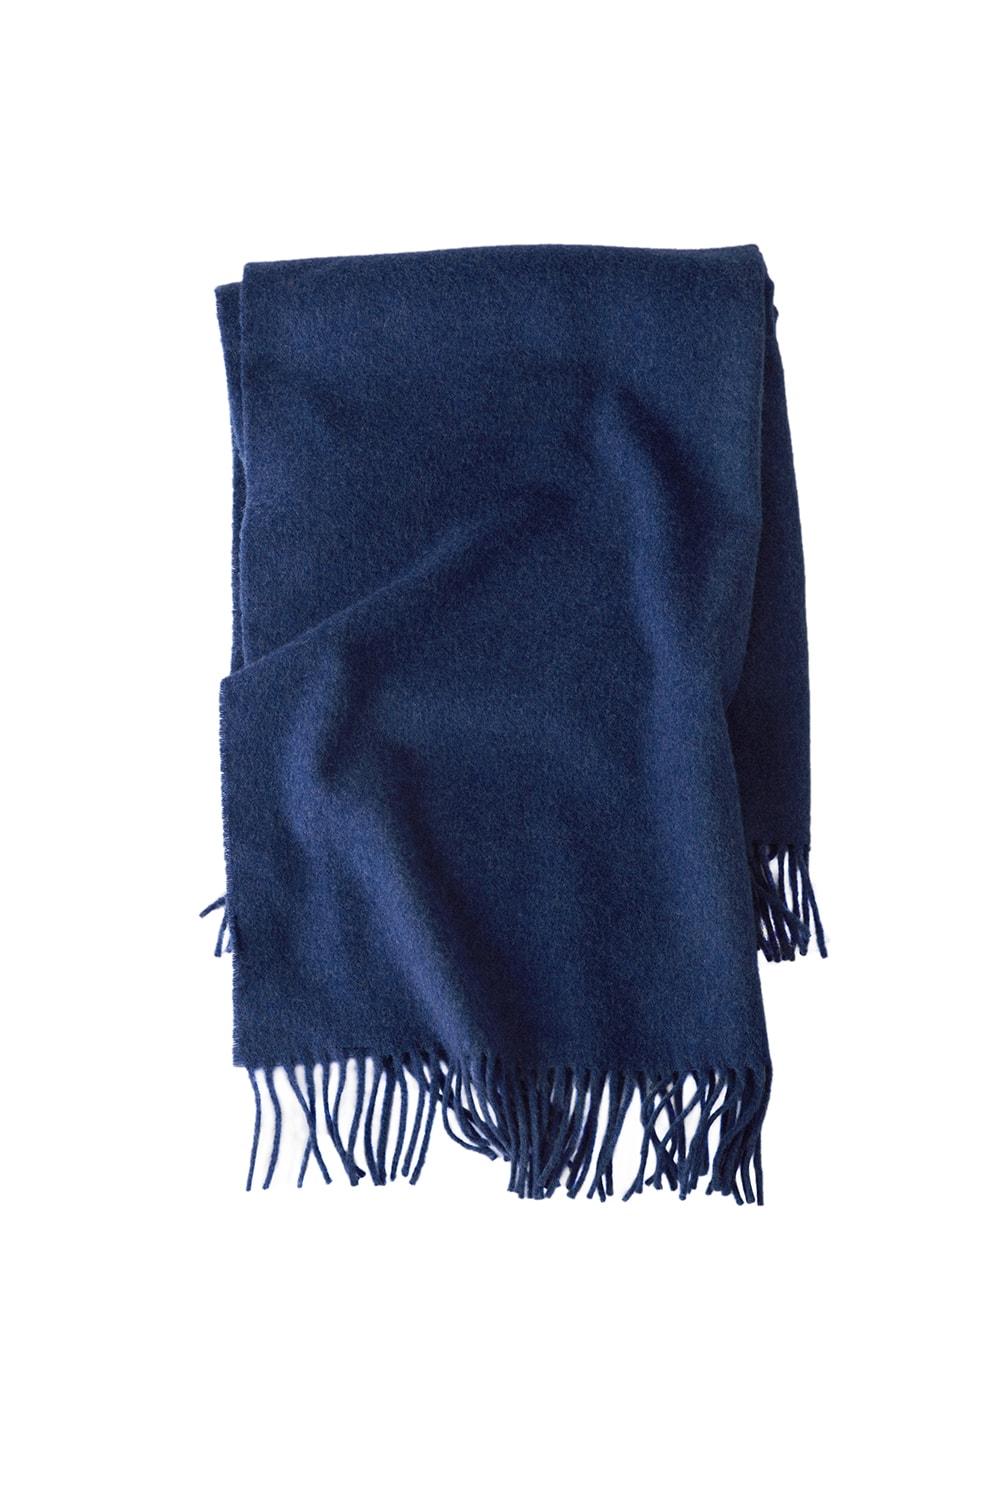 아크네 스튜디오 연말 선물 스카프 겨울 머플러 2017 acne studio holiday gifts scarfs